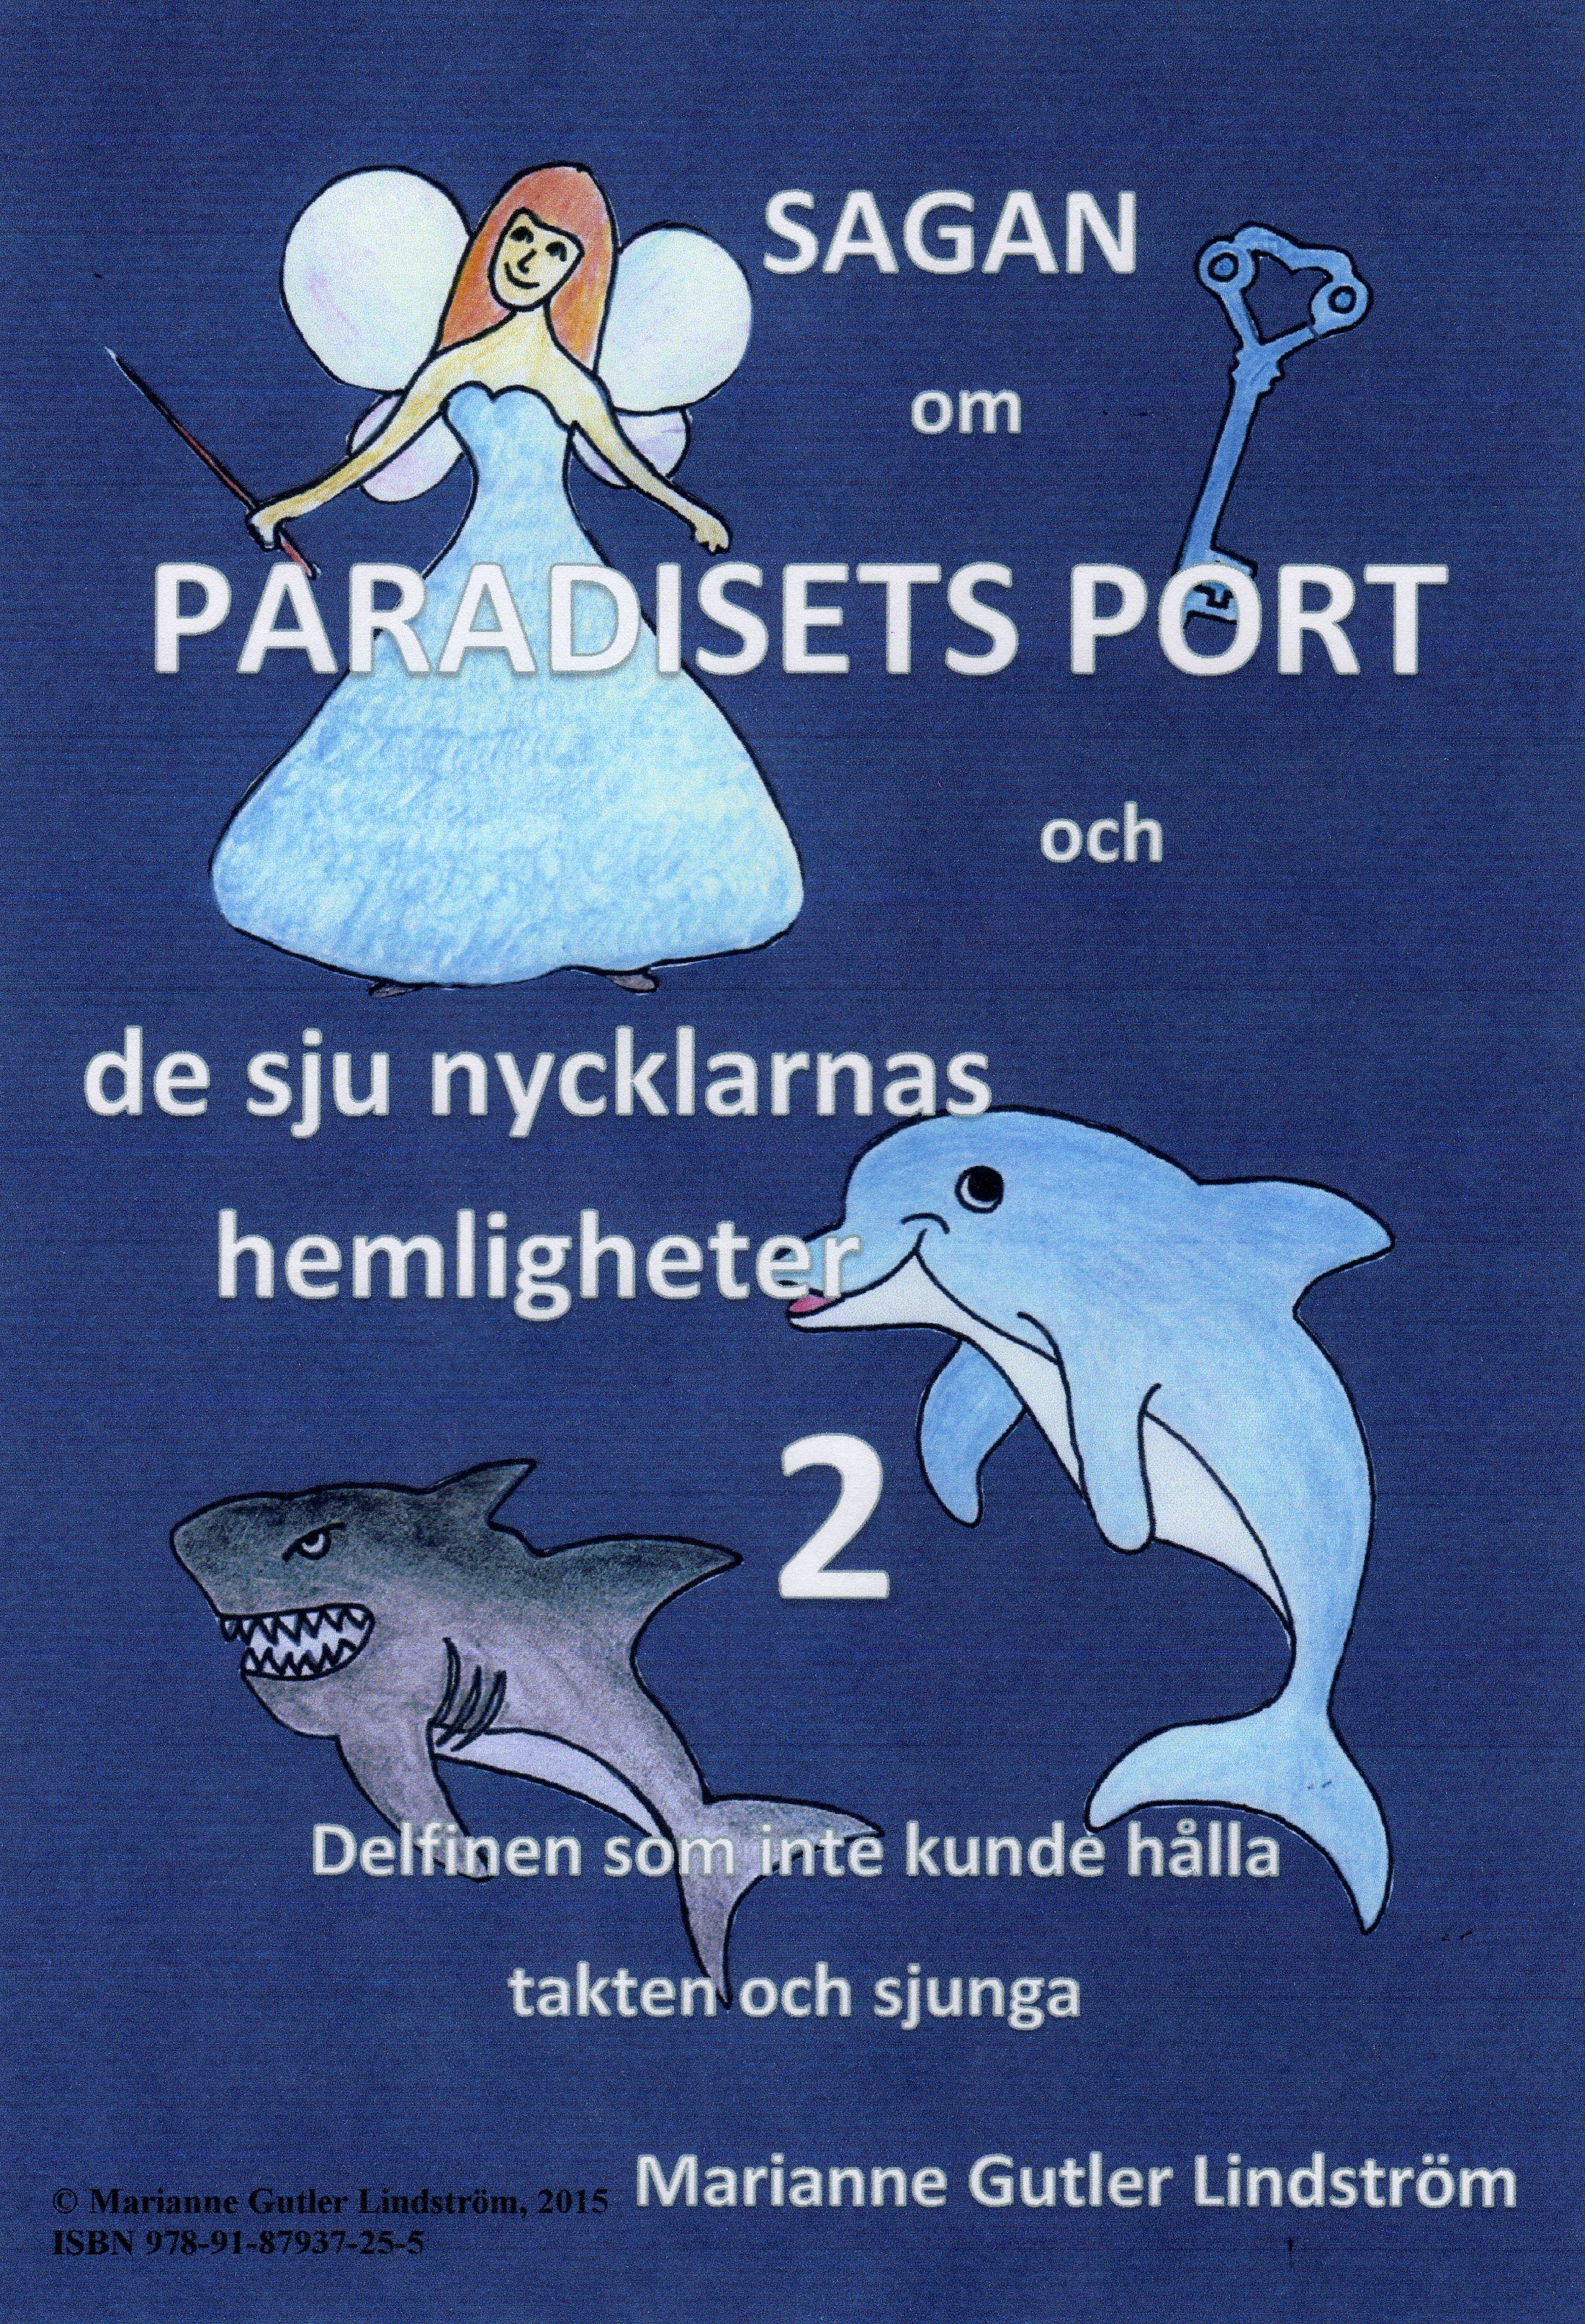 Sagan om Paradisets port 2 Delfinen som inte kunde hålla takten och sjunga, e-bok av Marianne Gutler Lindström